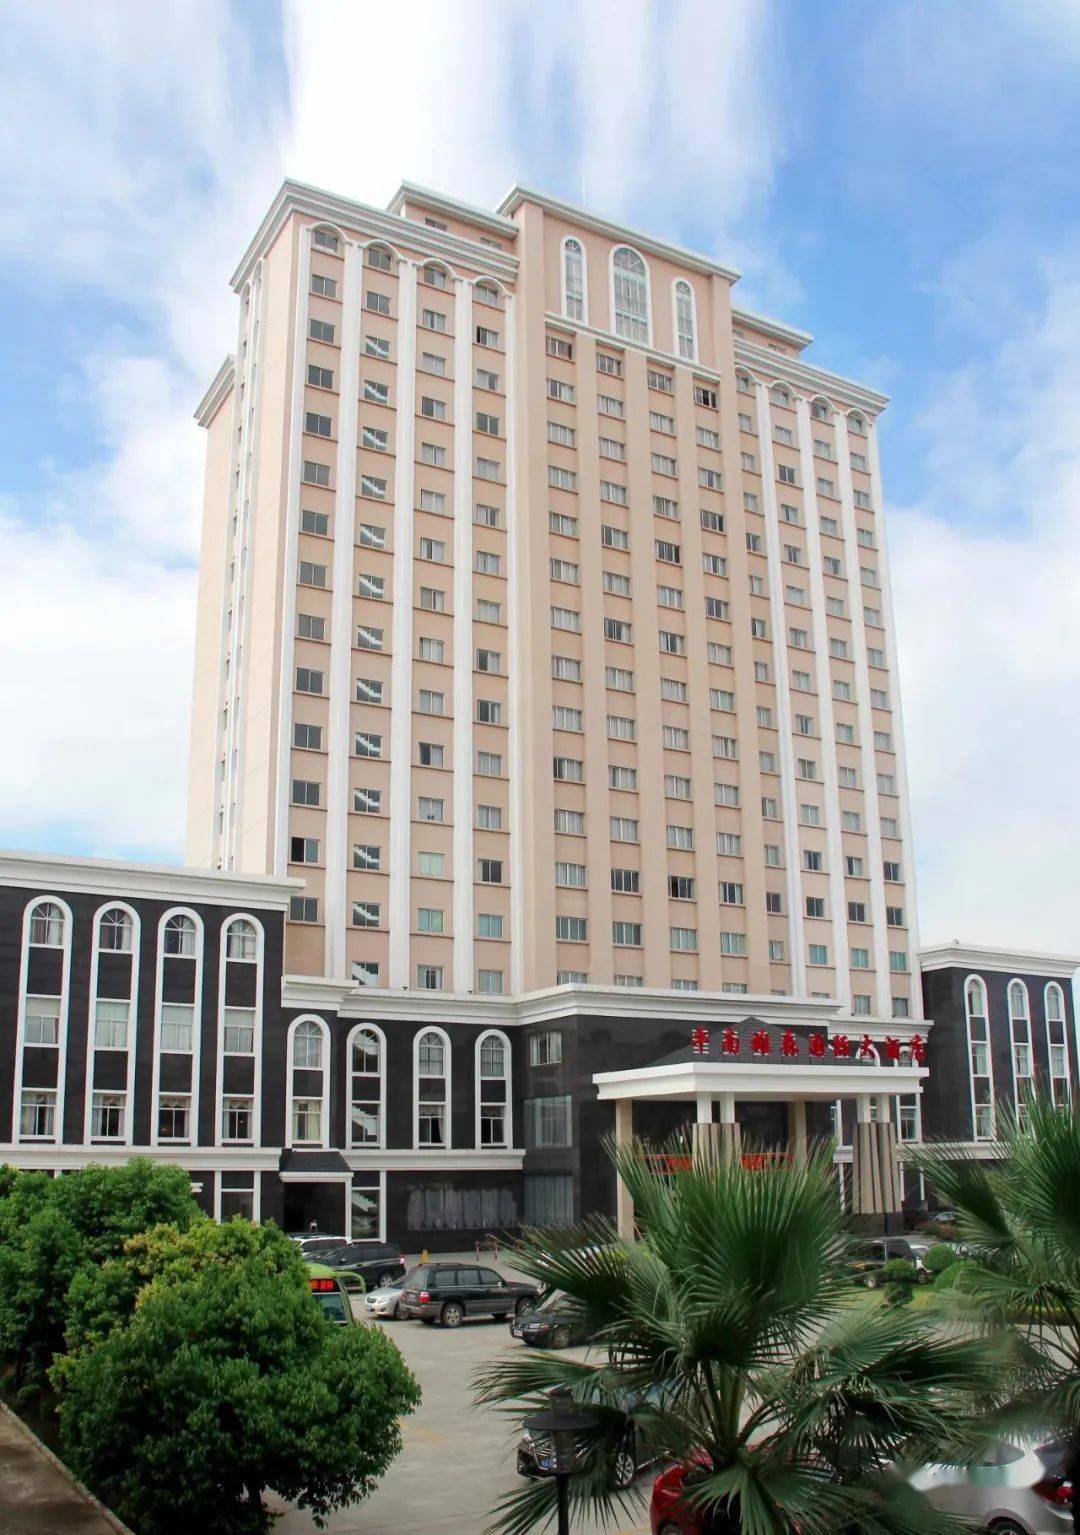 平南雄森国际大酒店是一家挂牌四星级酒店,地处贵港市平南县雅塘街中